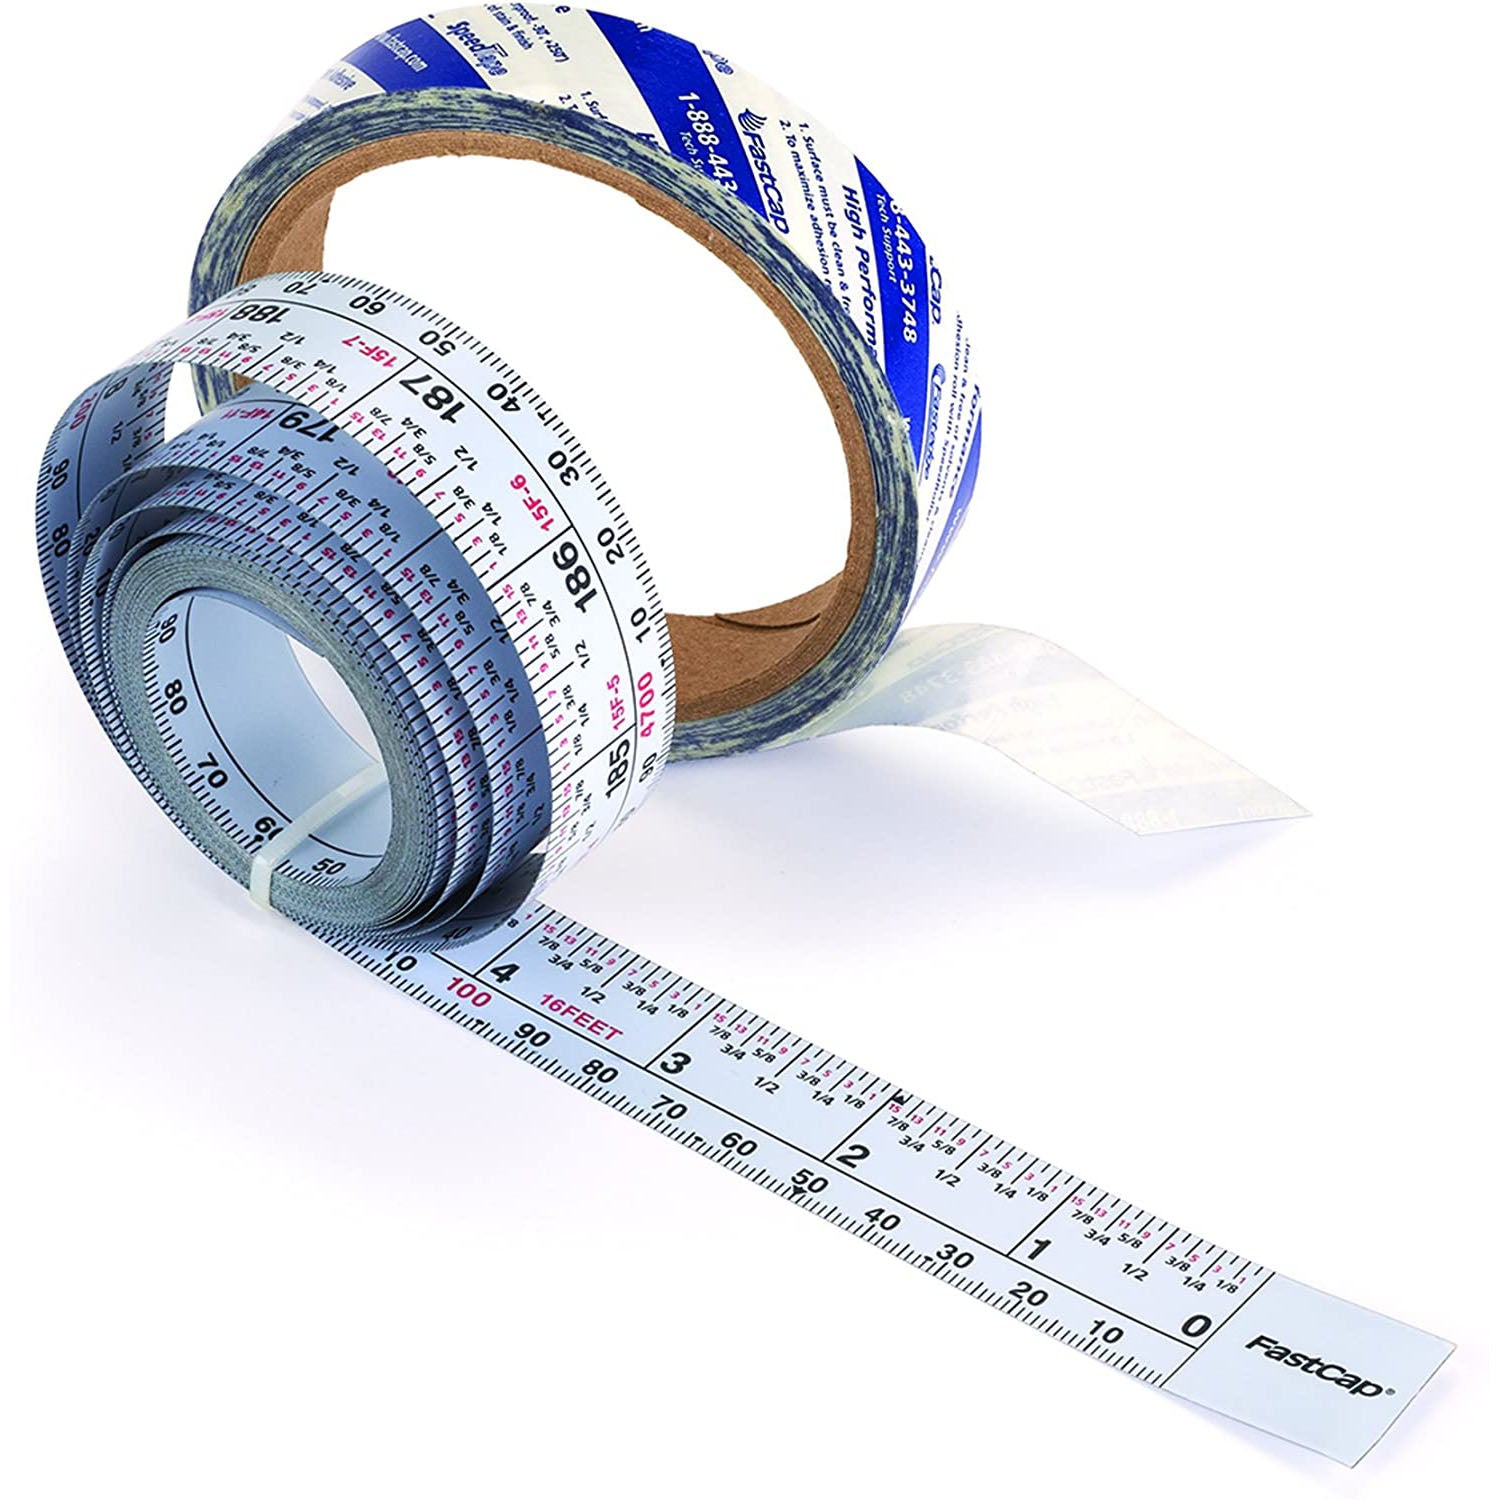 Fastcap Self-Adhesive Reversible Measuring Tape, 16